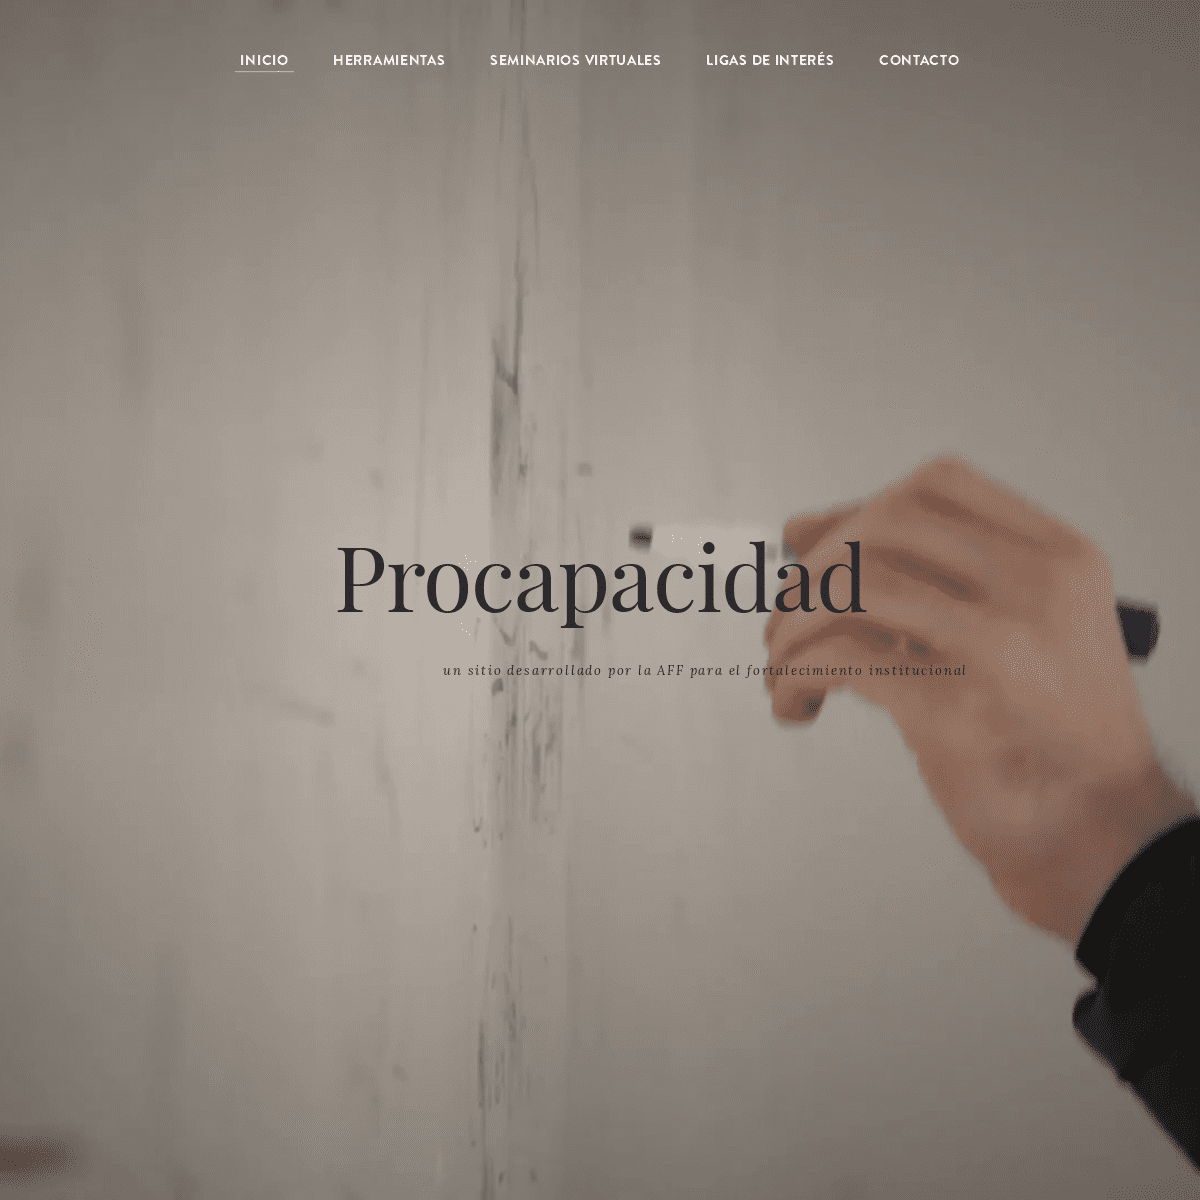 PROCAPACIDAD, Un proyecto de la AFF - Acerca de